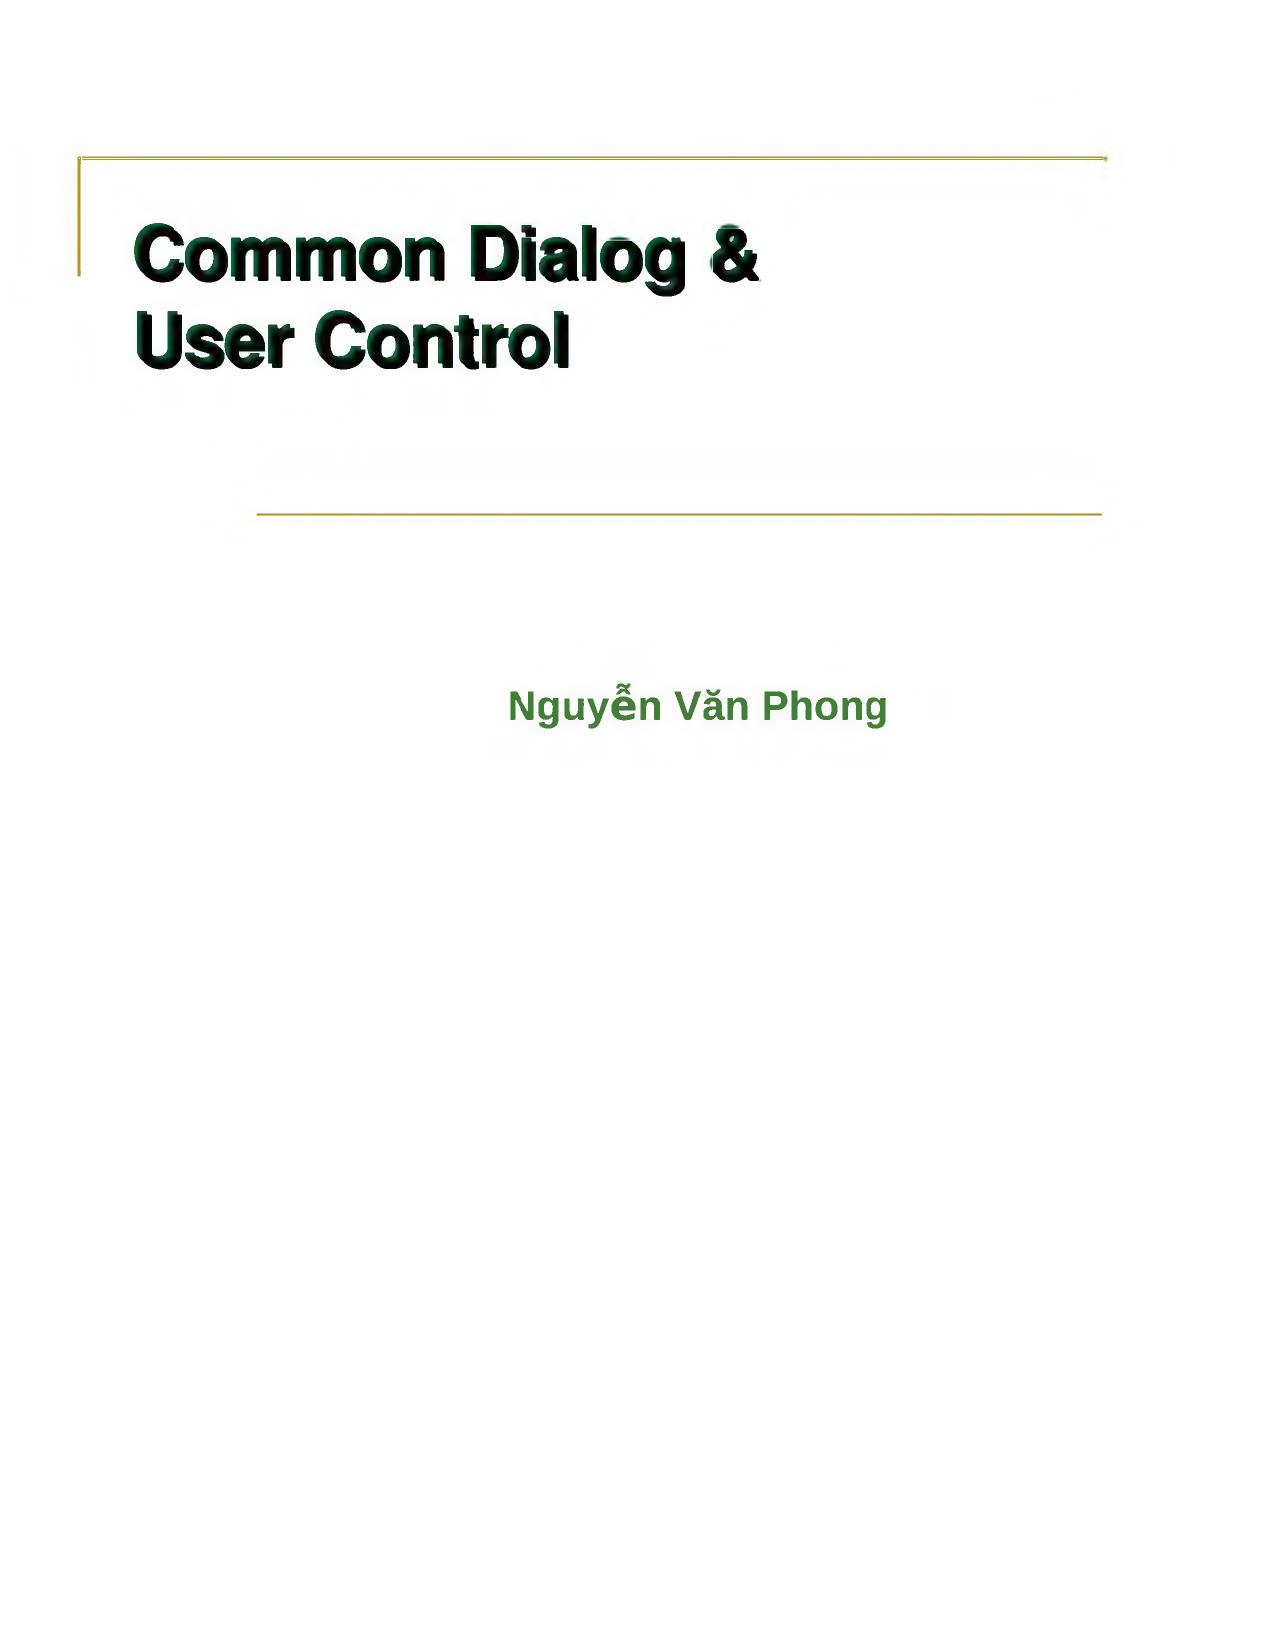 Common Dialog & User Control trang 1